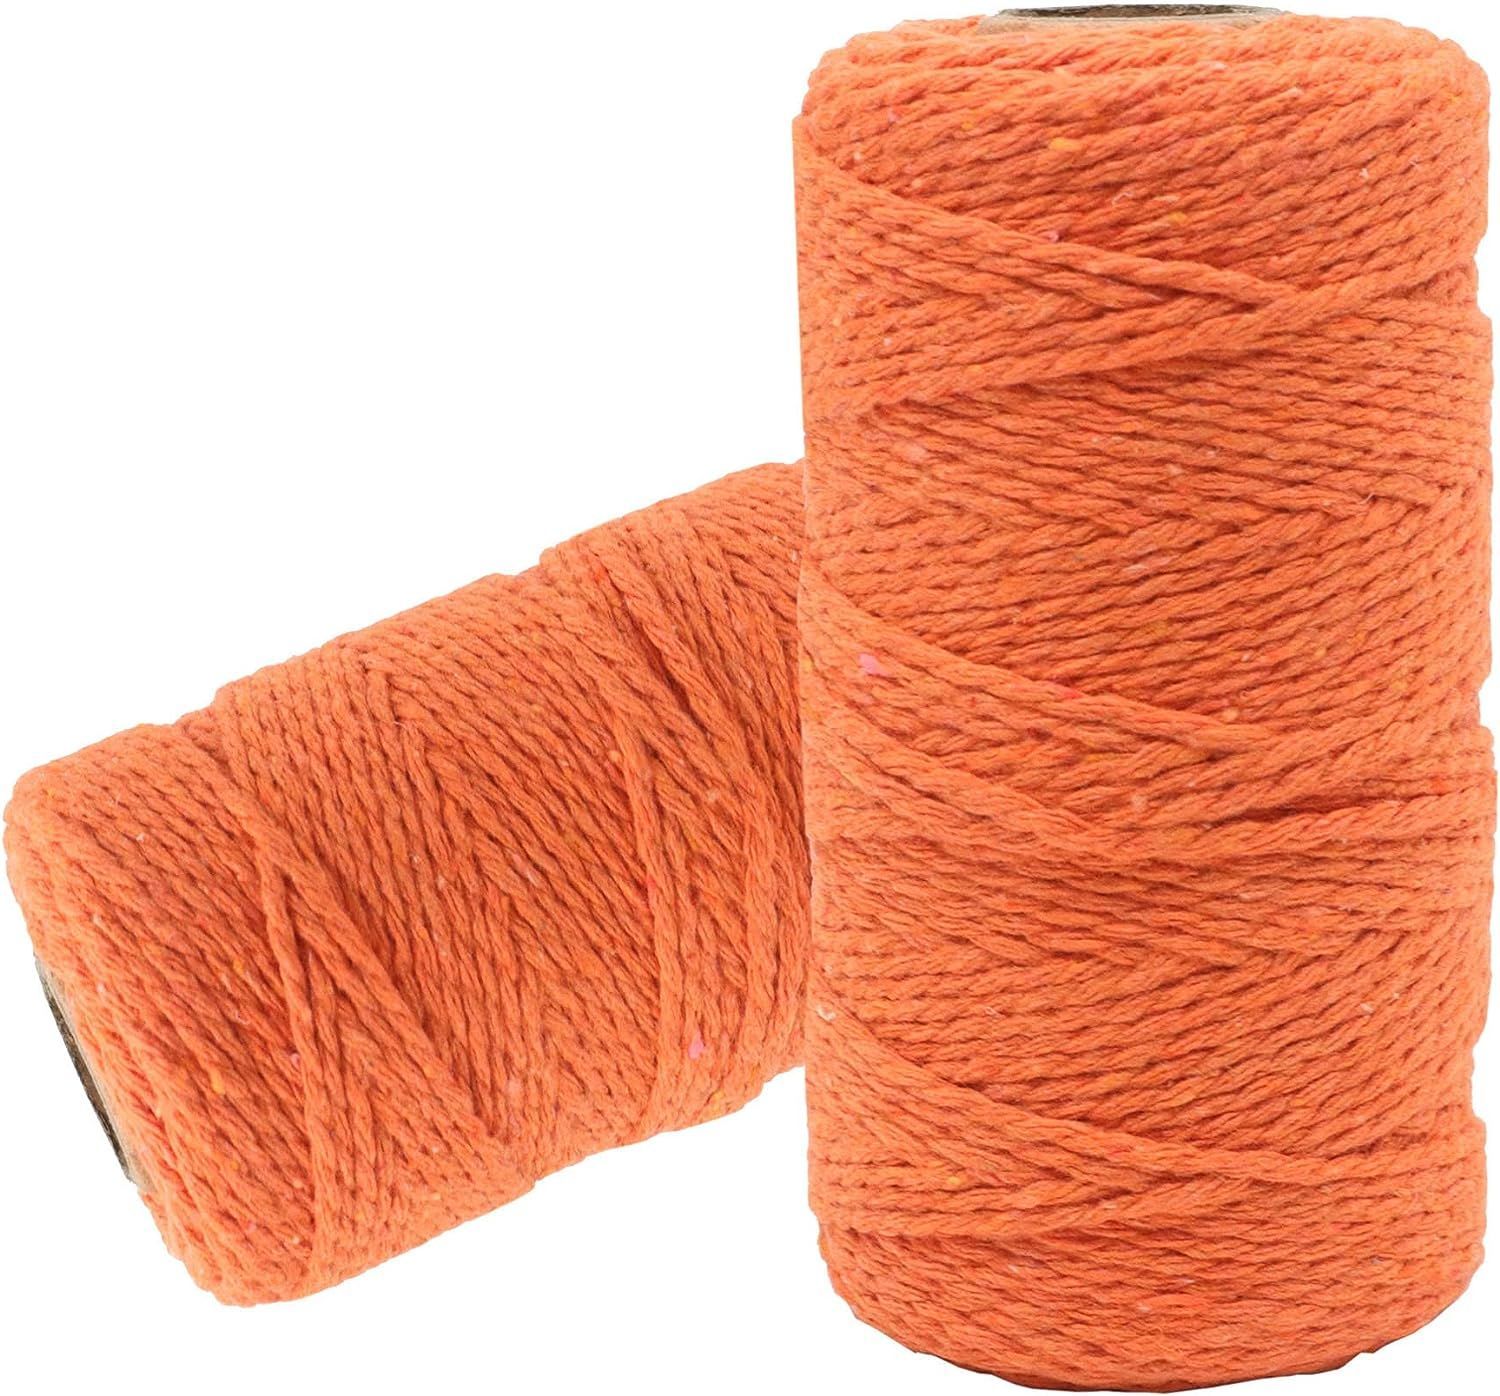 Шпагат хлопковый Kraftcom, 2мм х 50м (6шт), цвет - оранжевый / шпагат для вязания